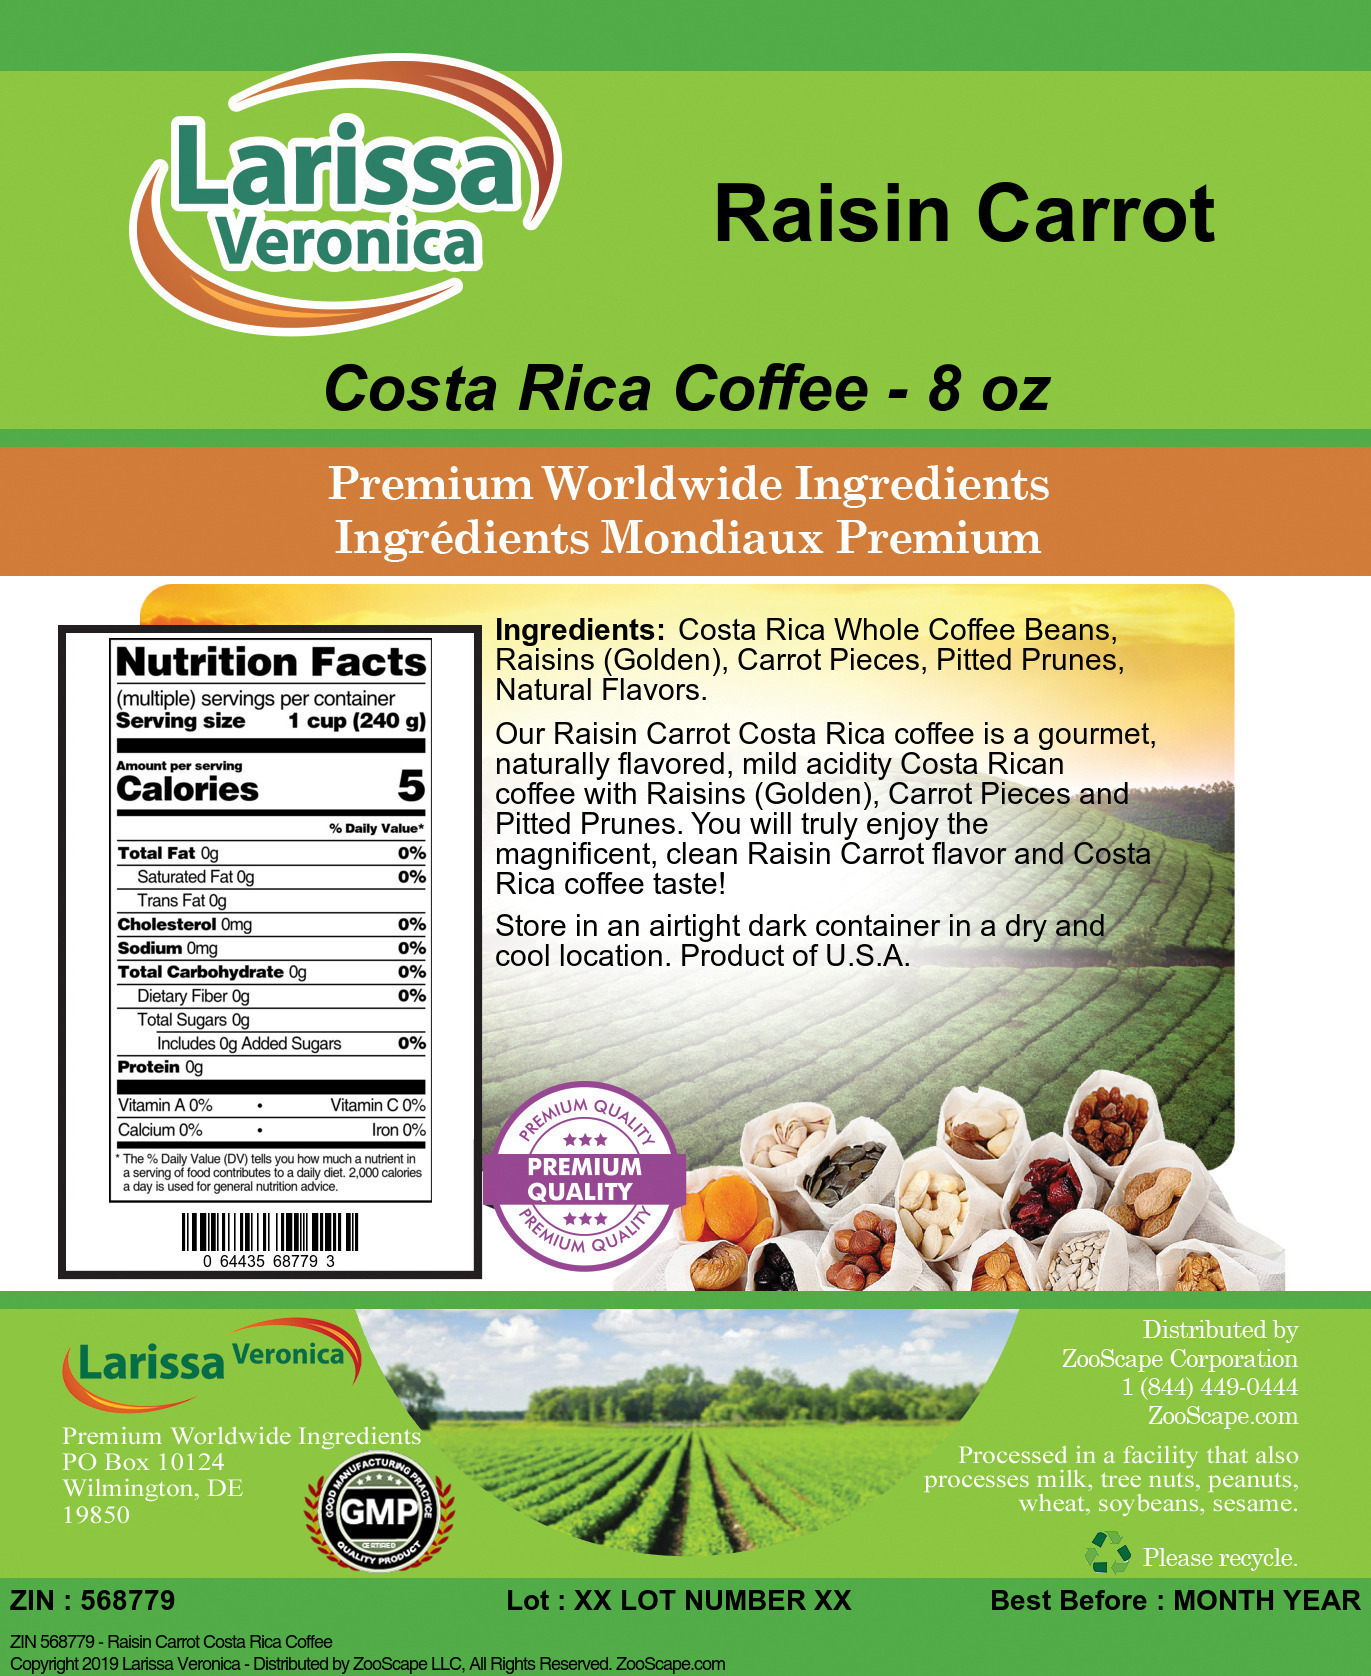 Raisin Carrot Costa Rica Coffee - Label